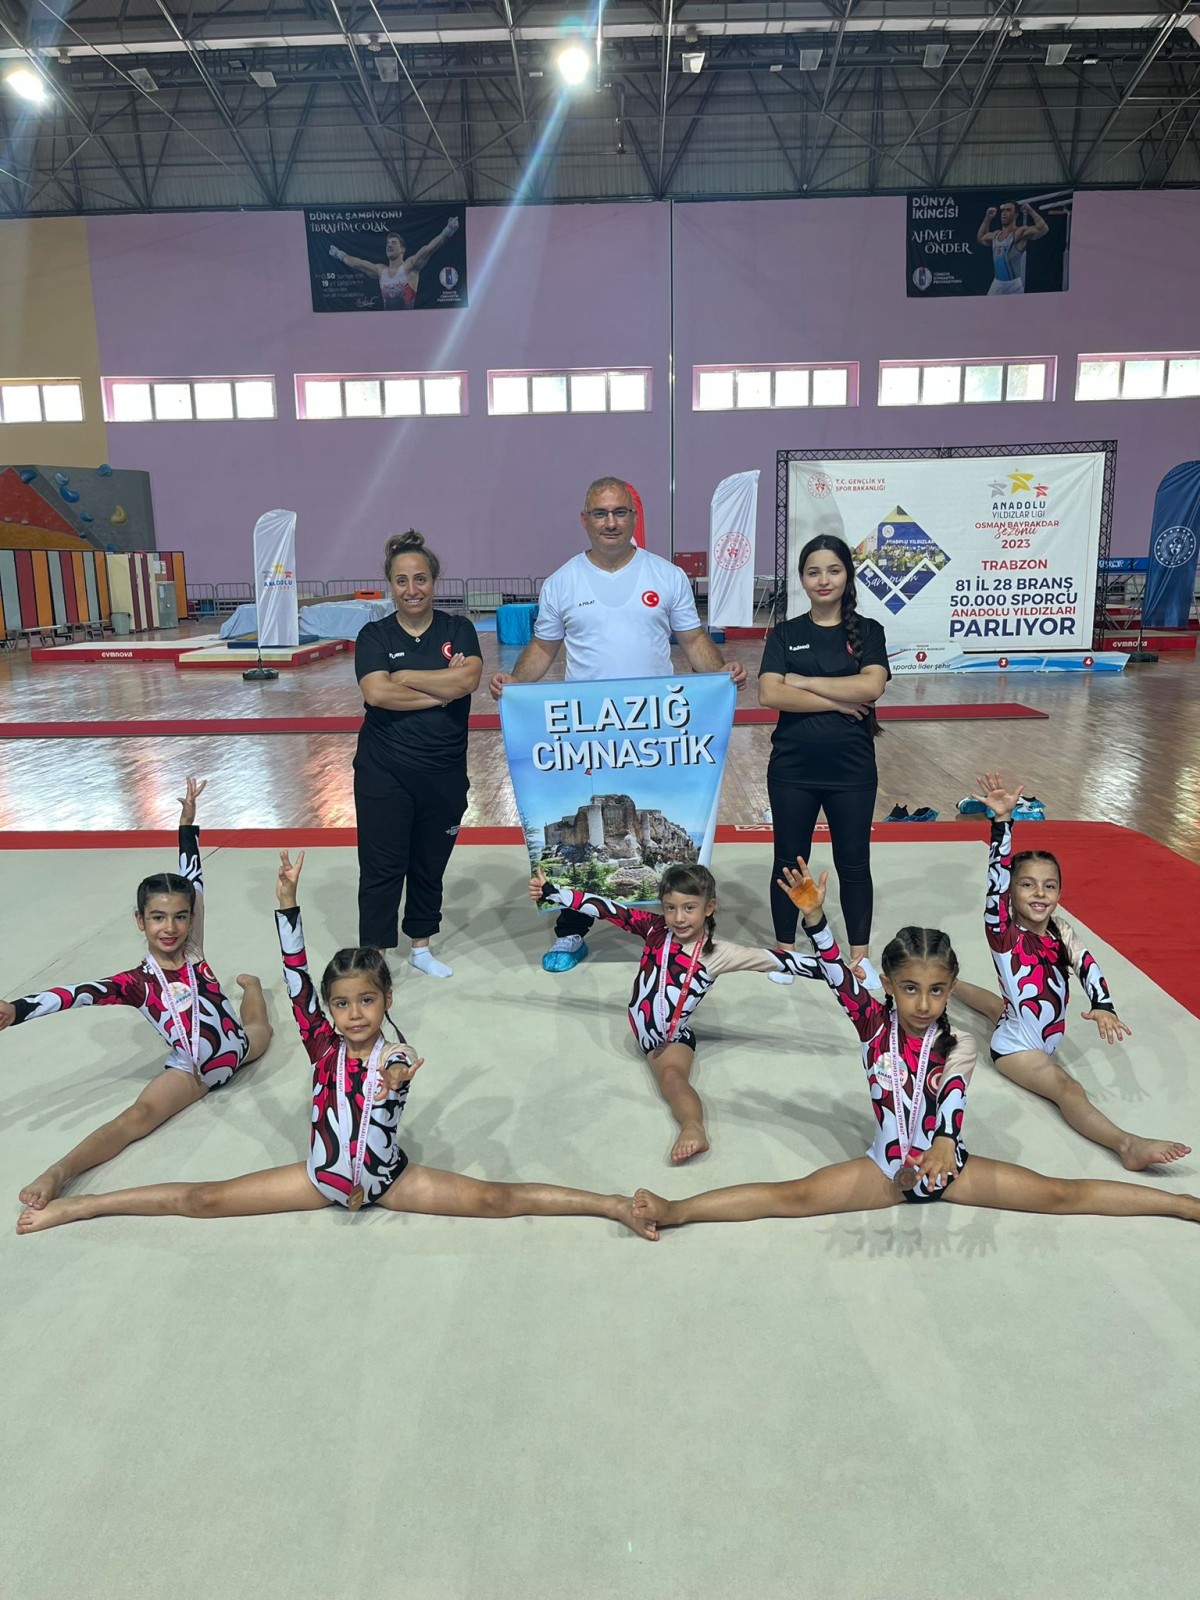 Elazığ Kız Cimnastik Takımı Türkiye Finallerinde